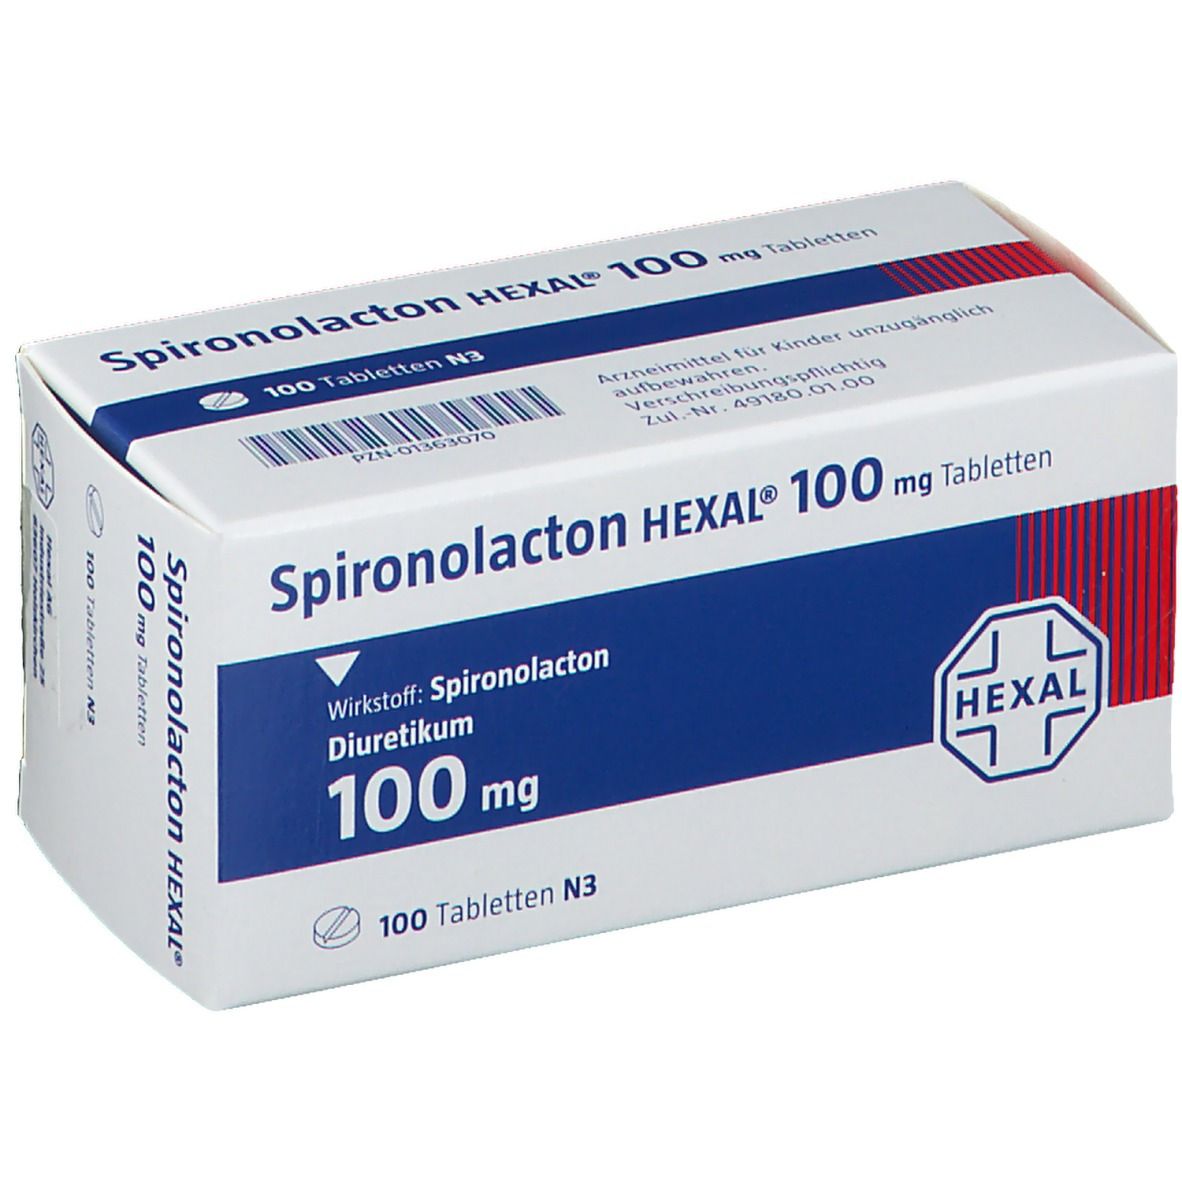 Spironolacton HEXAL® 100 mg